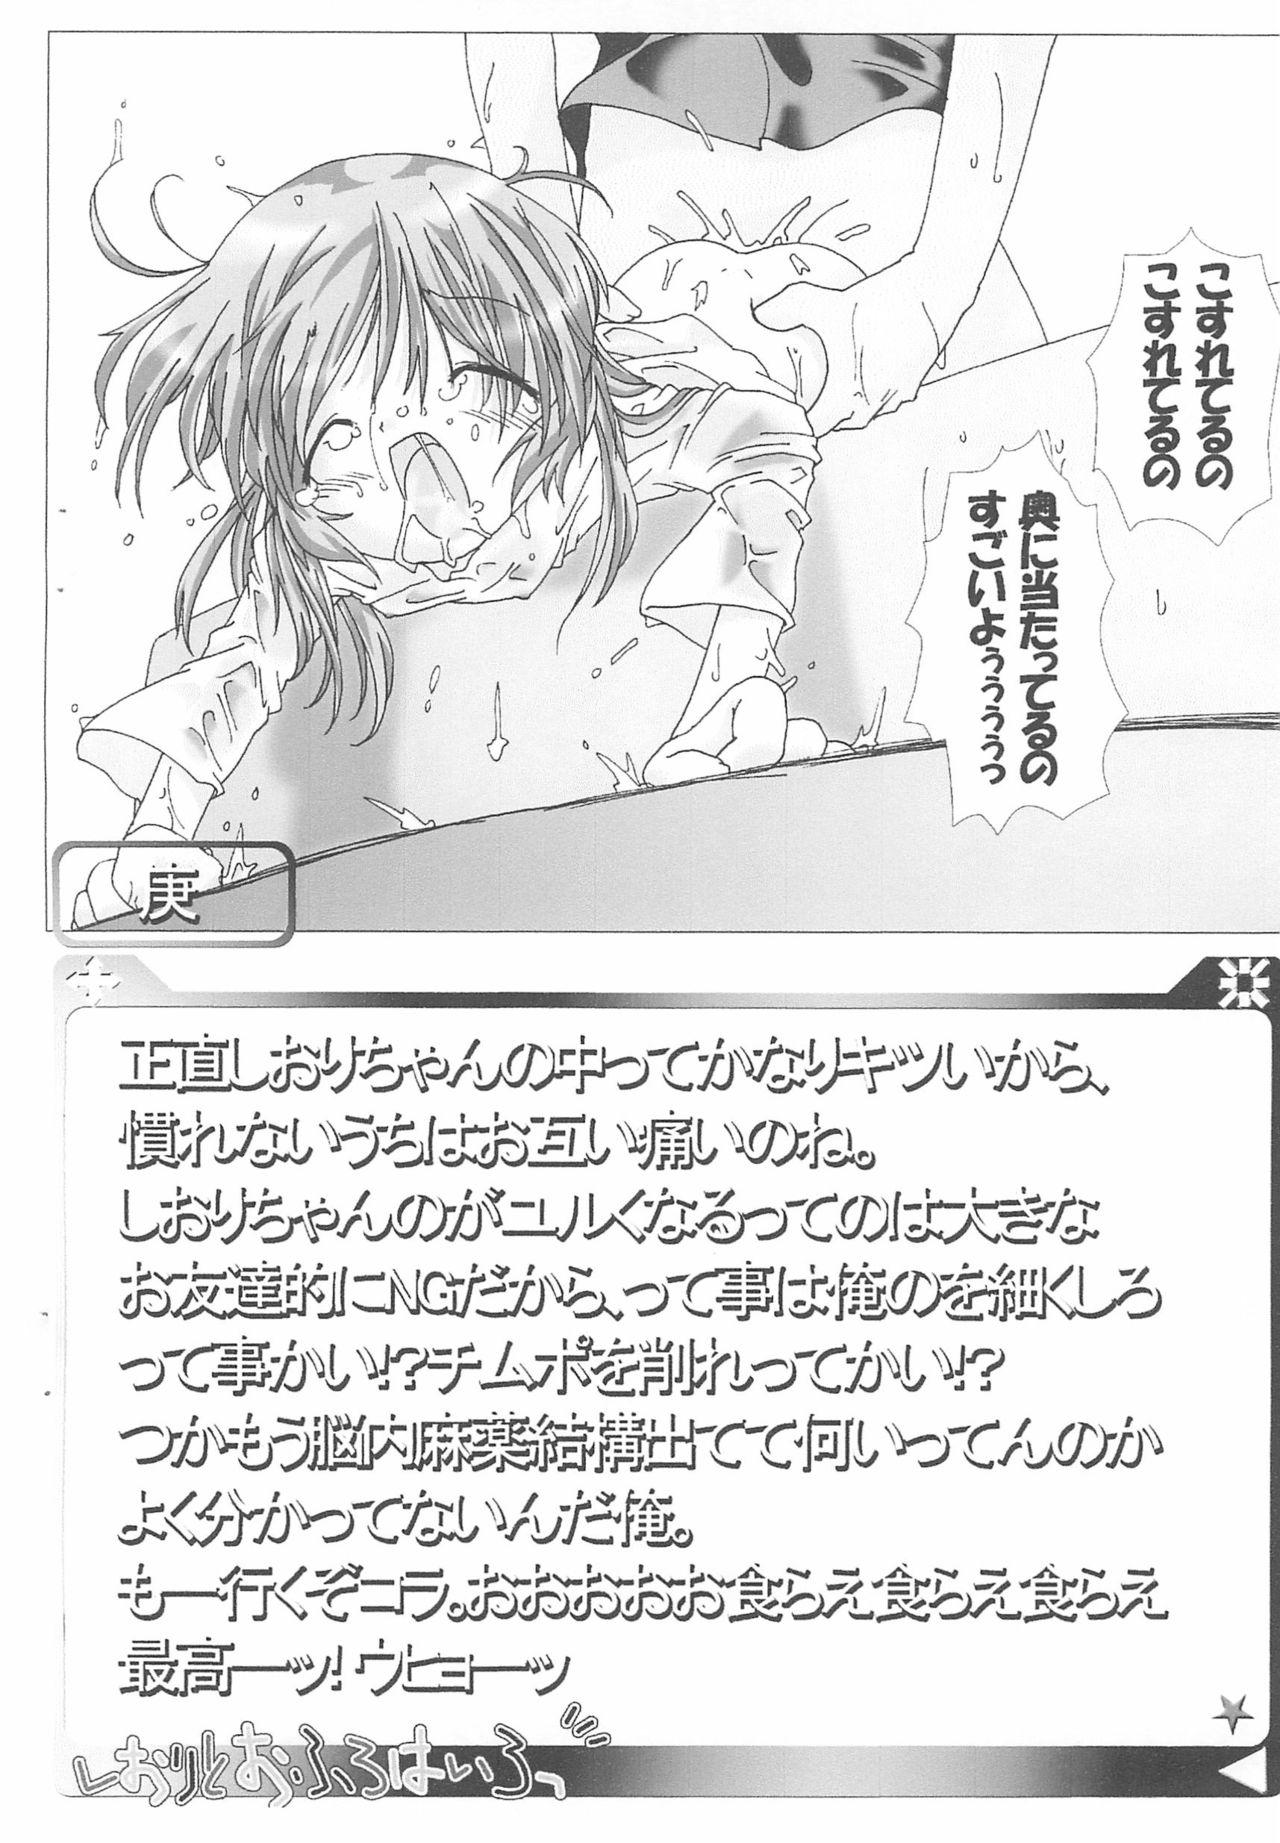 Holes Juuhachi-kin Kodomo no Teki - Hajimete no orusuban Leaked - Page 8